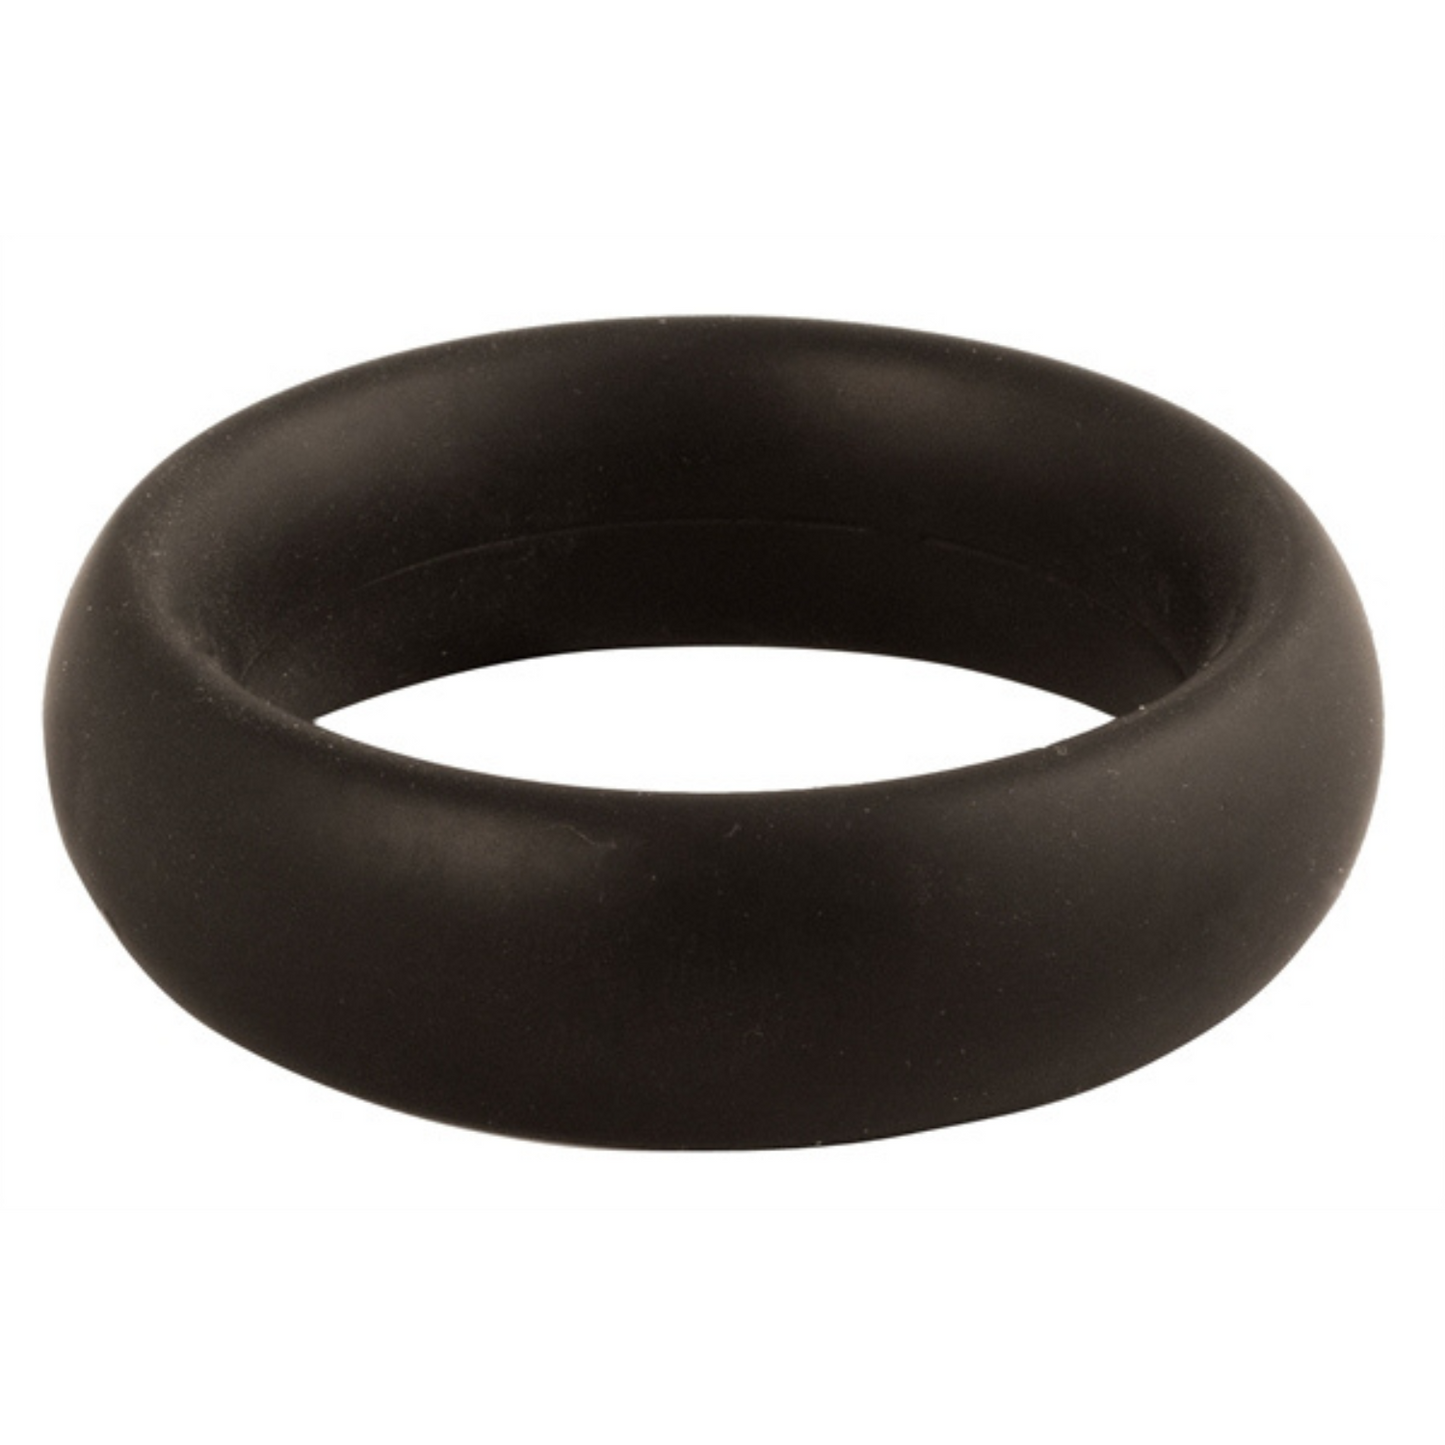 Zwarte donut cock ring met een diameter van 45 mm van Mister B, te koop bij Flavourez.